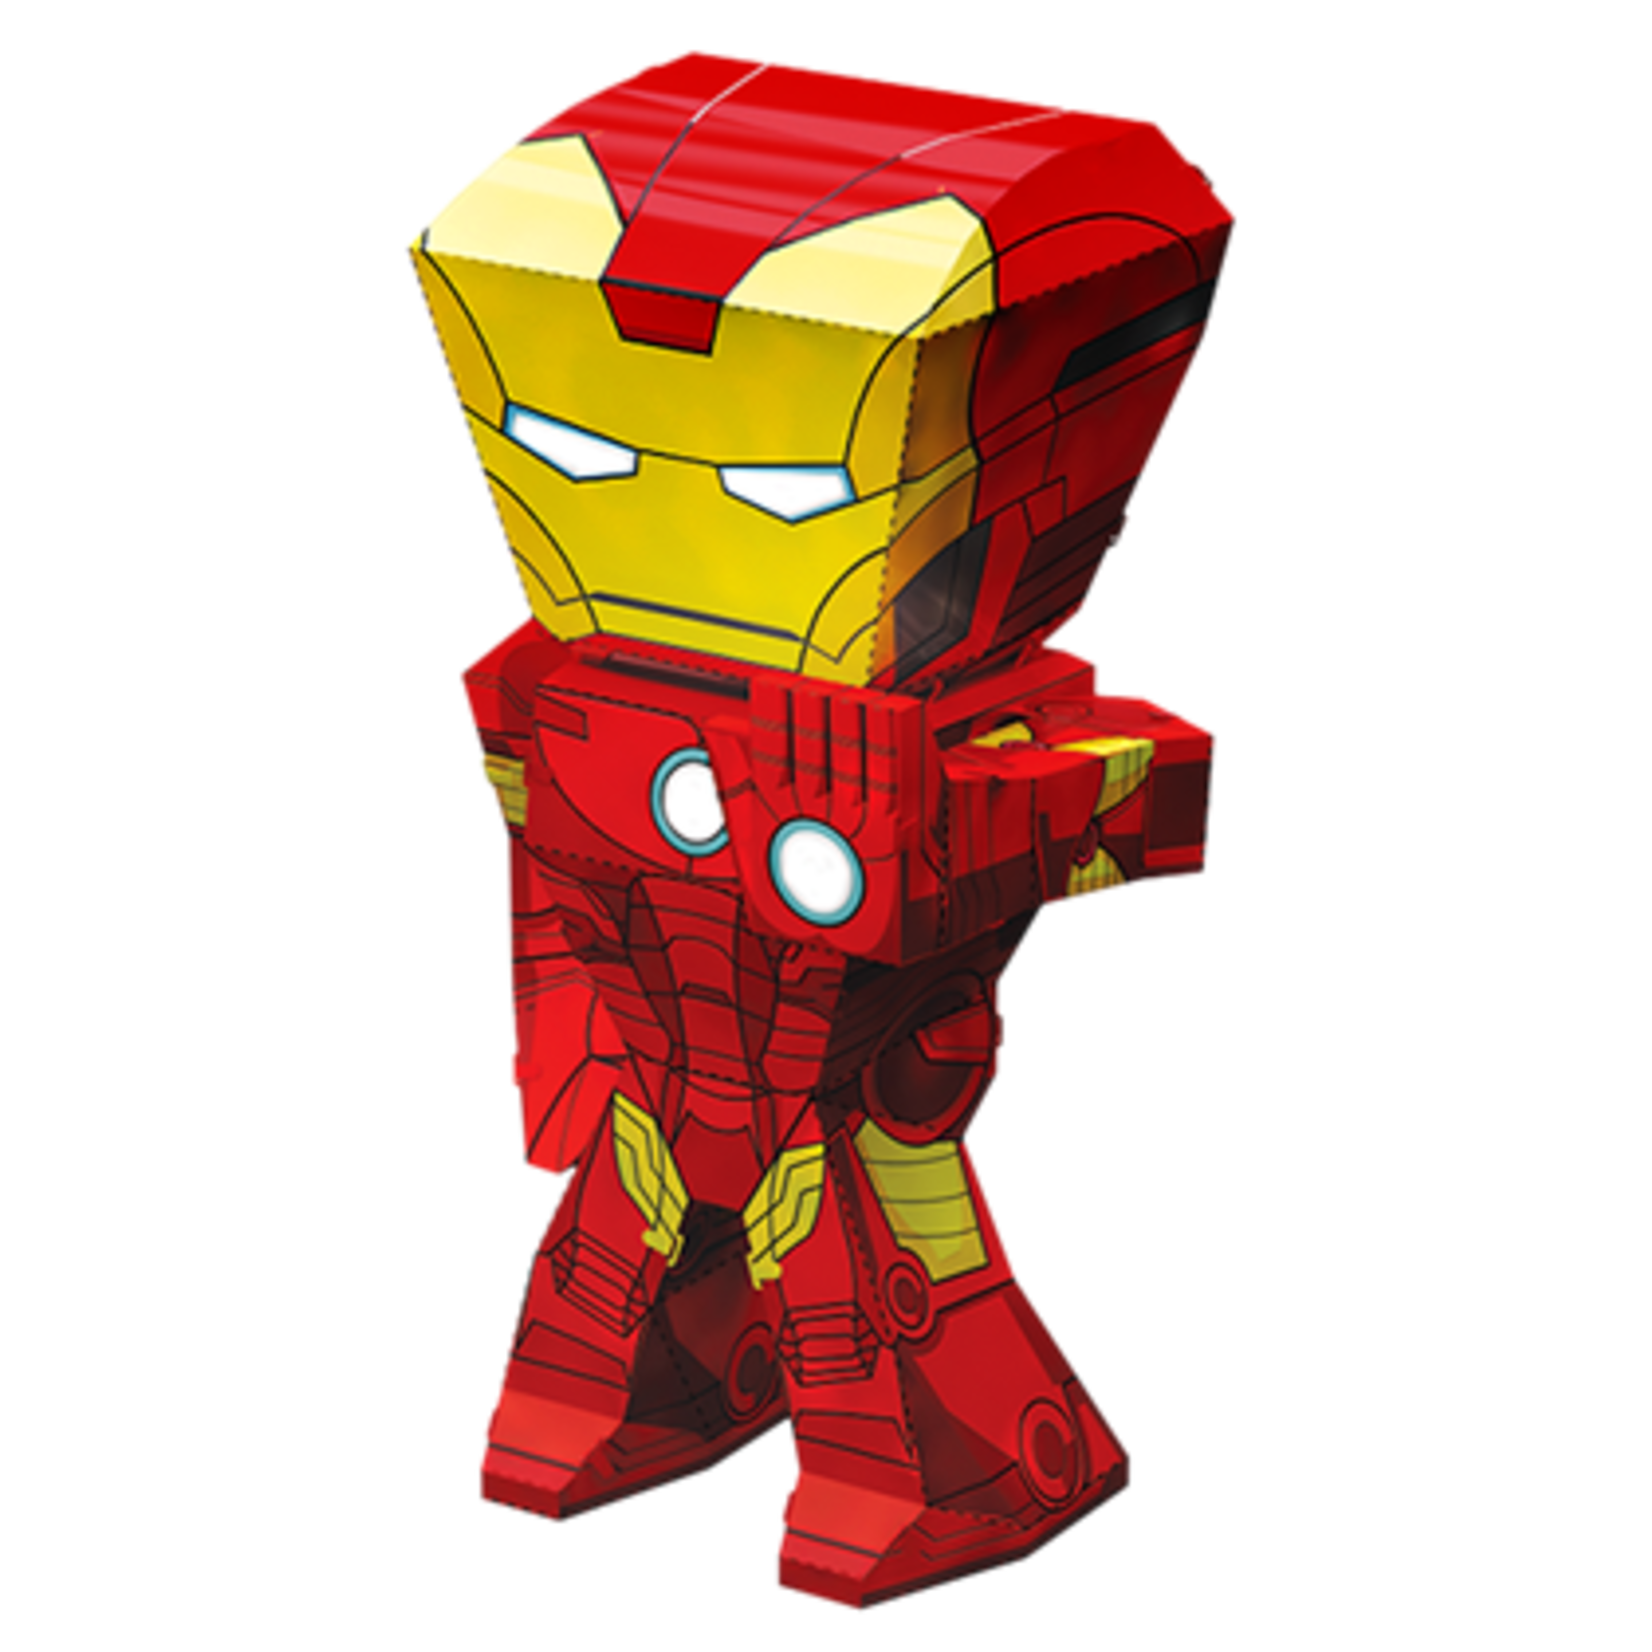 Metal Earth MEM002 Ironman Marvel Avengers